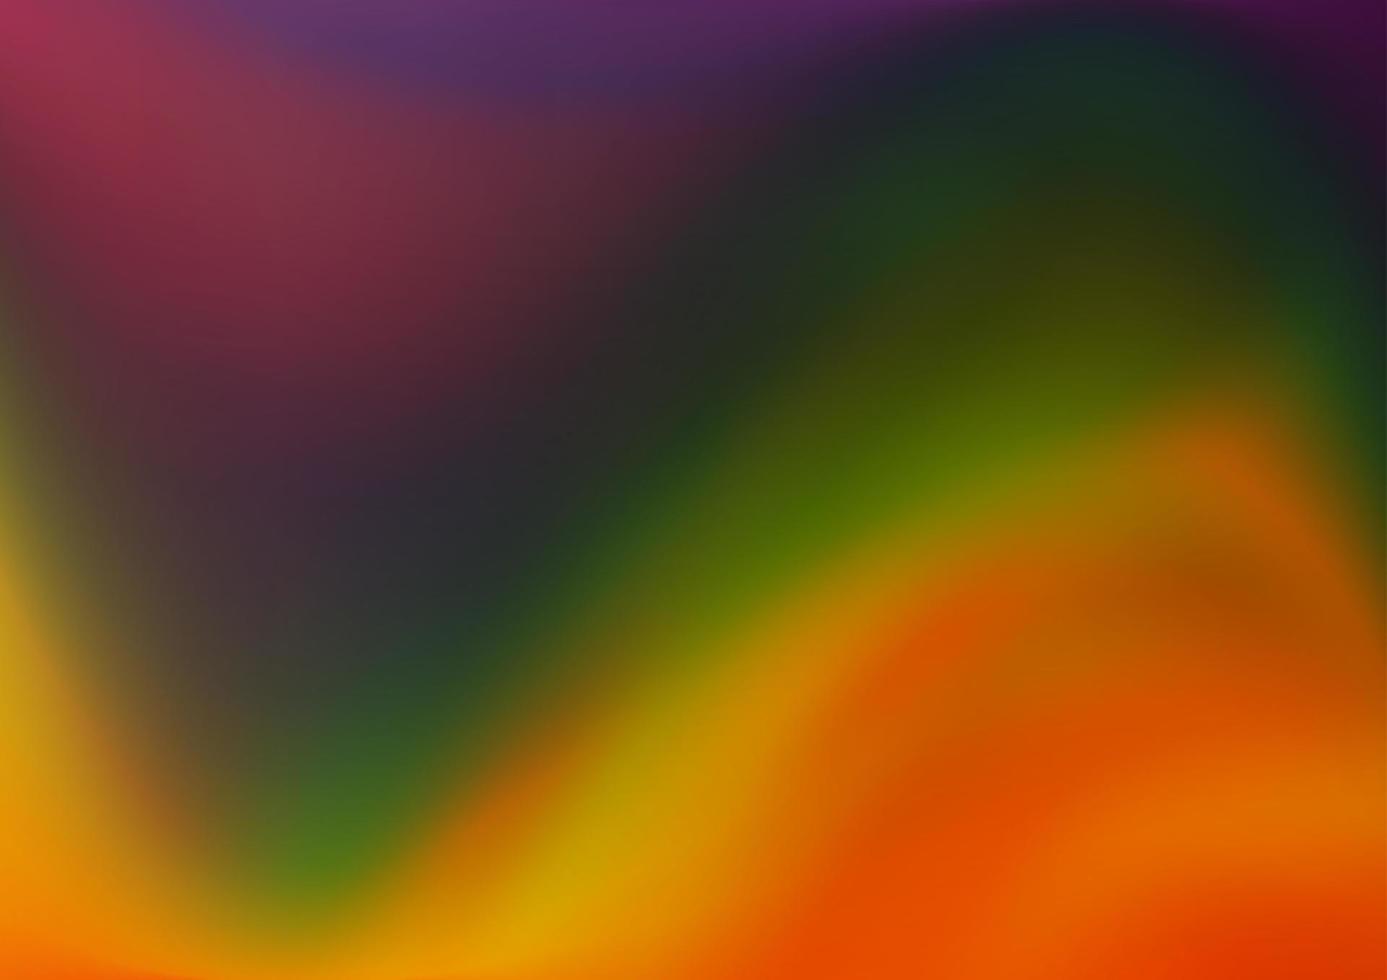 multicolor oscuro, arco iris vector abstracto plantilla borrosa.